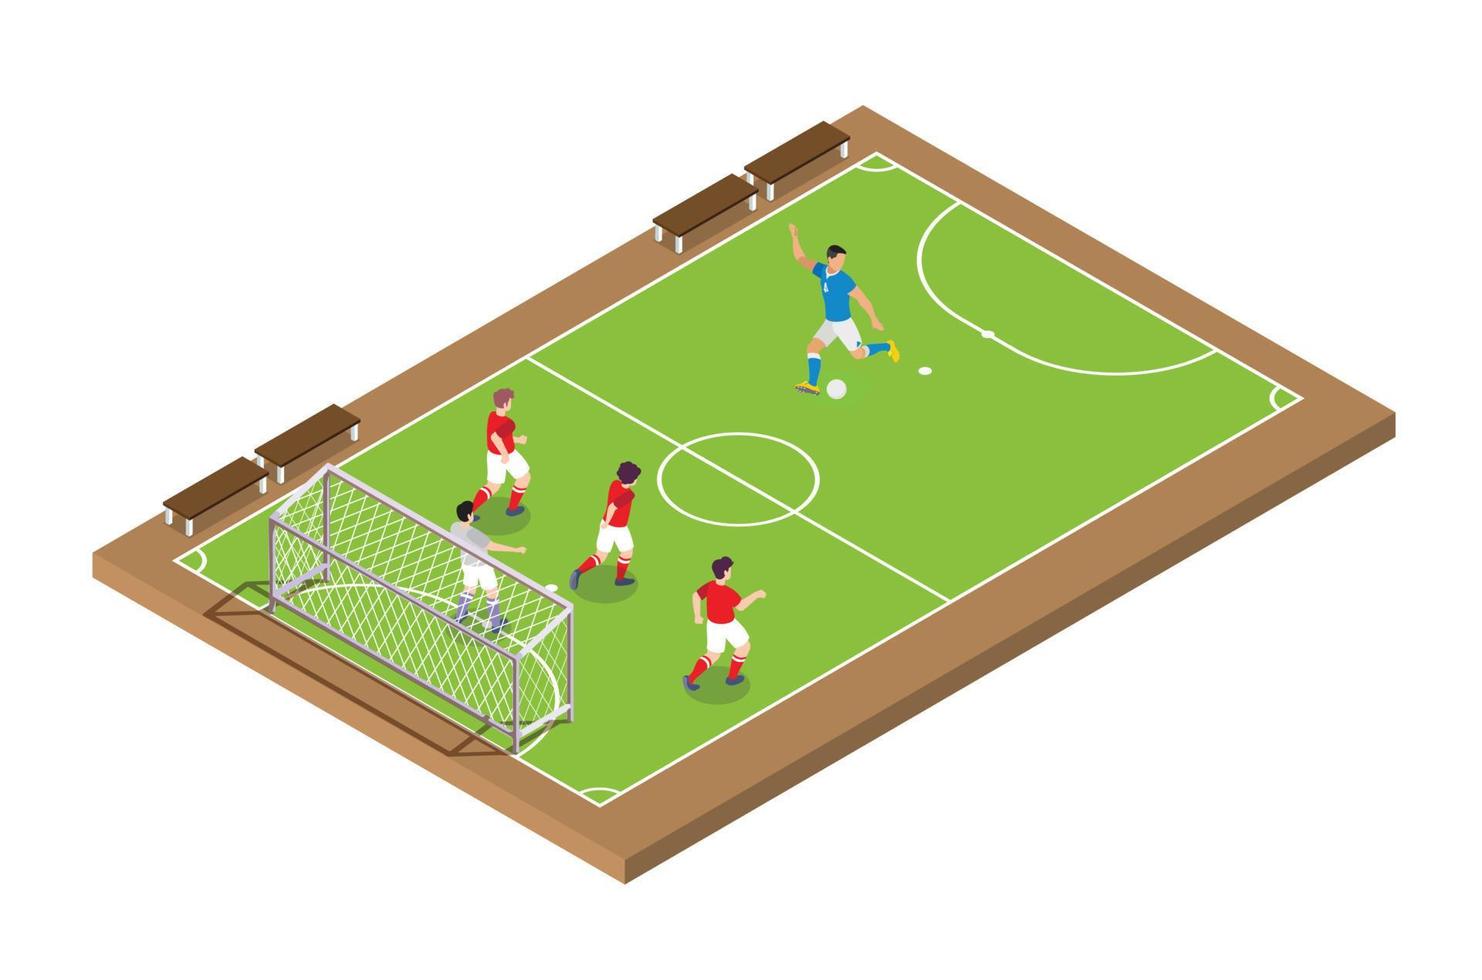 ilustração de torneio de futebol ao vivo isométrica moderna, adequada para diagramas, infográficos, ilustração de livro, ativo de jogo e outros ativos gráficos relacionados vetor